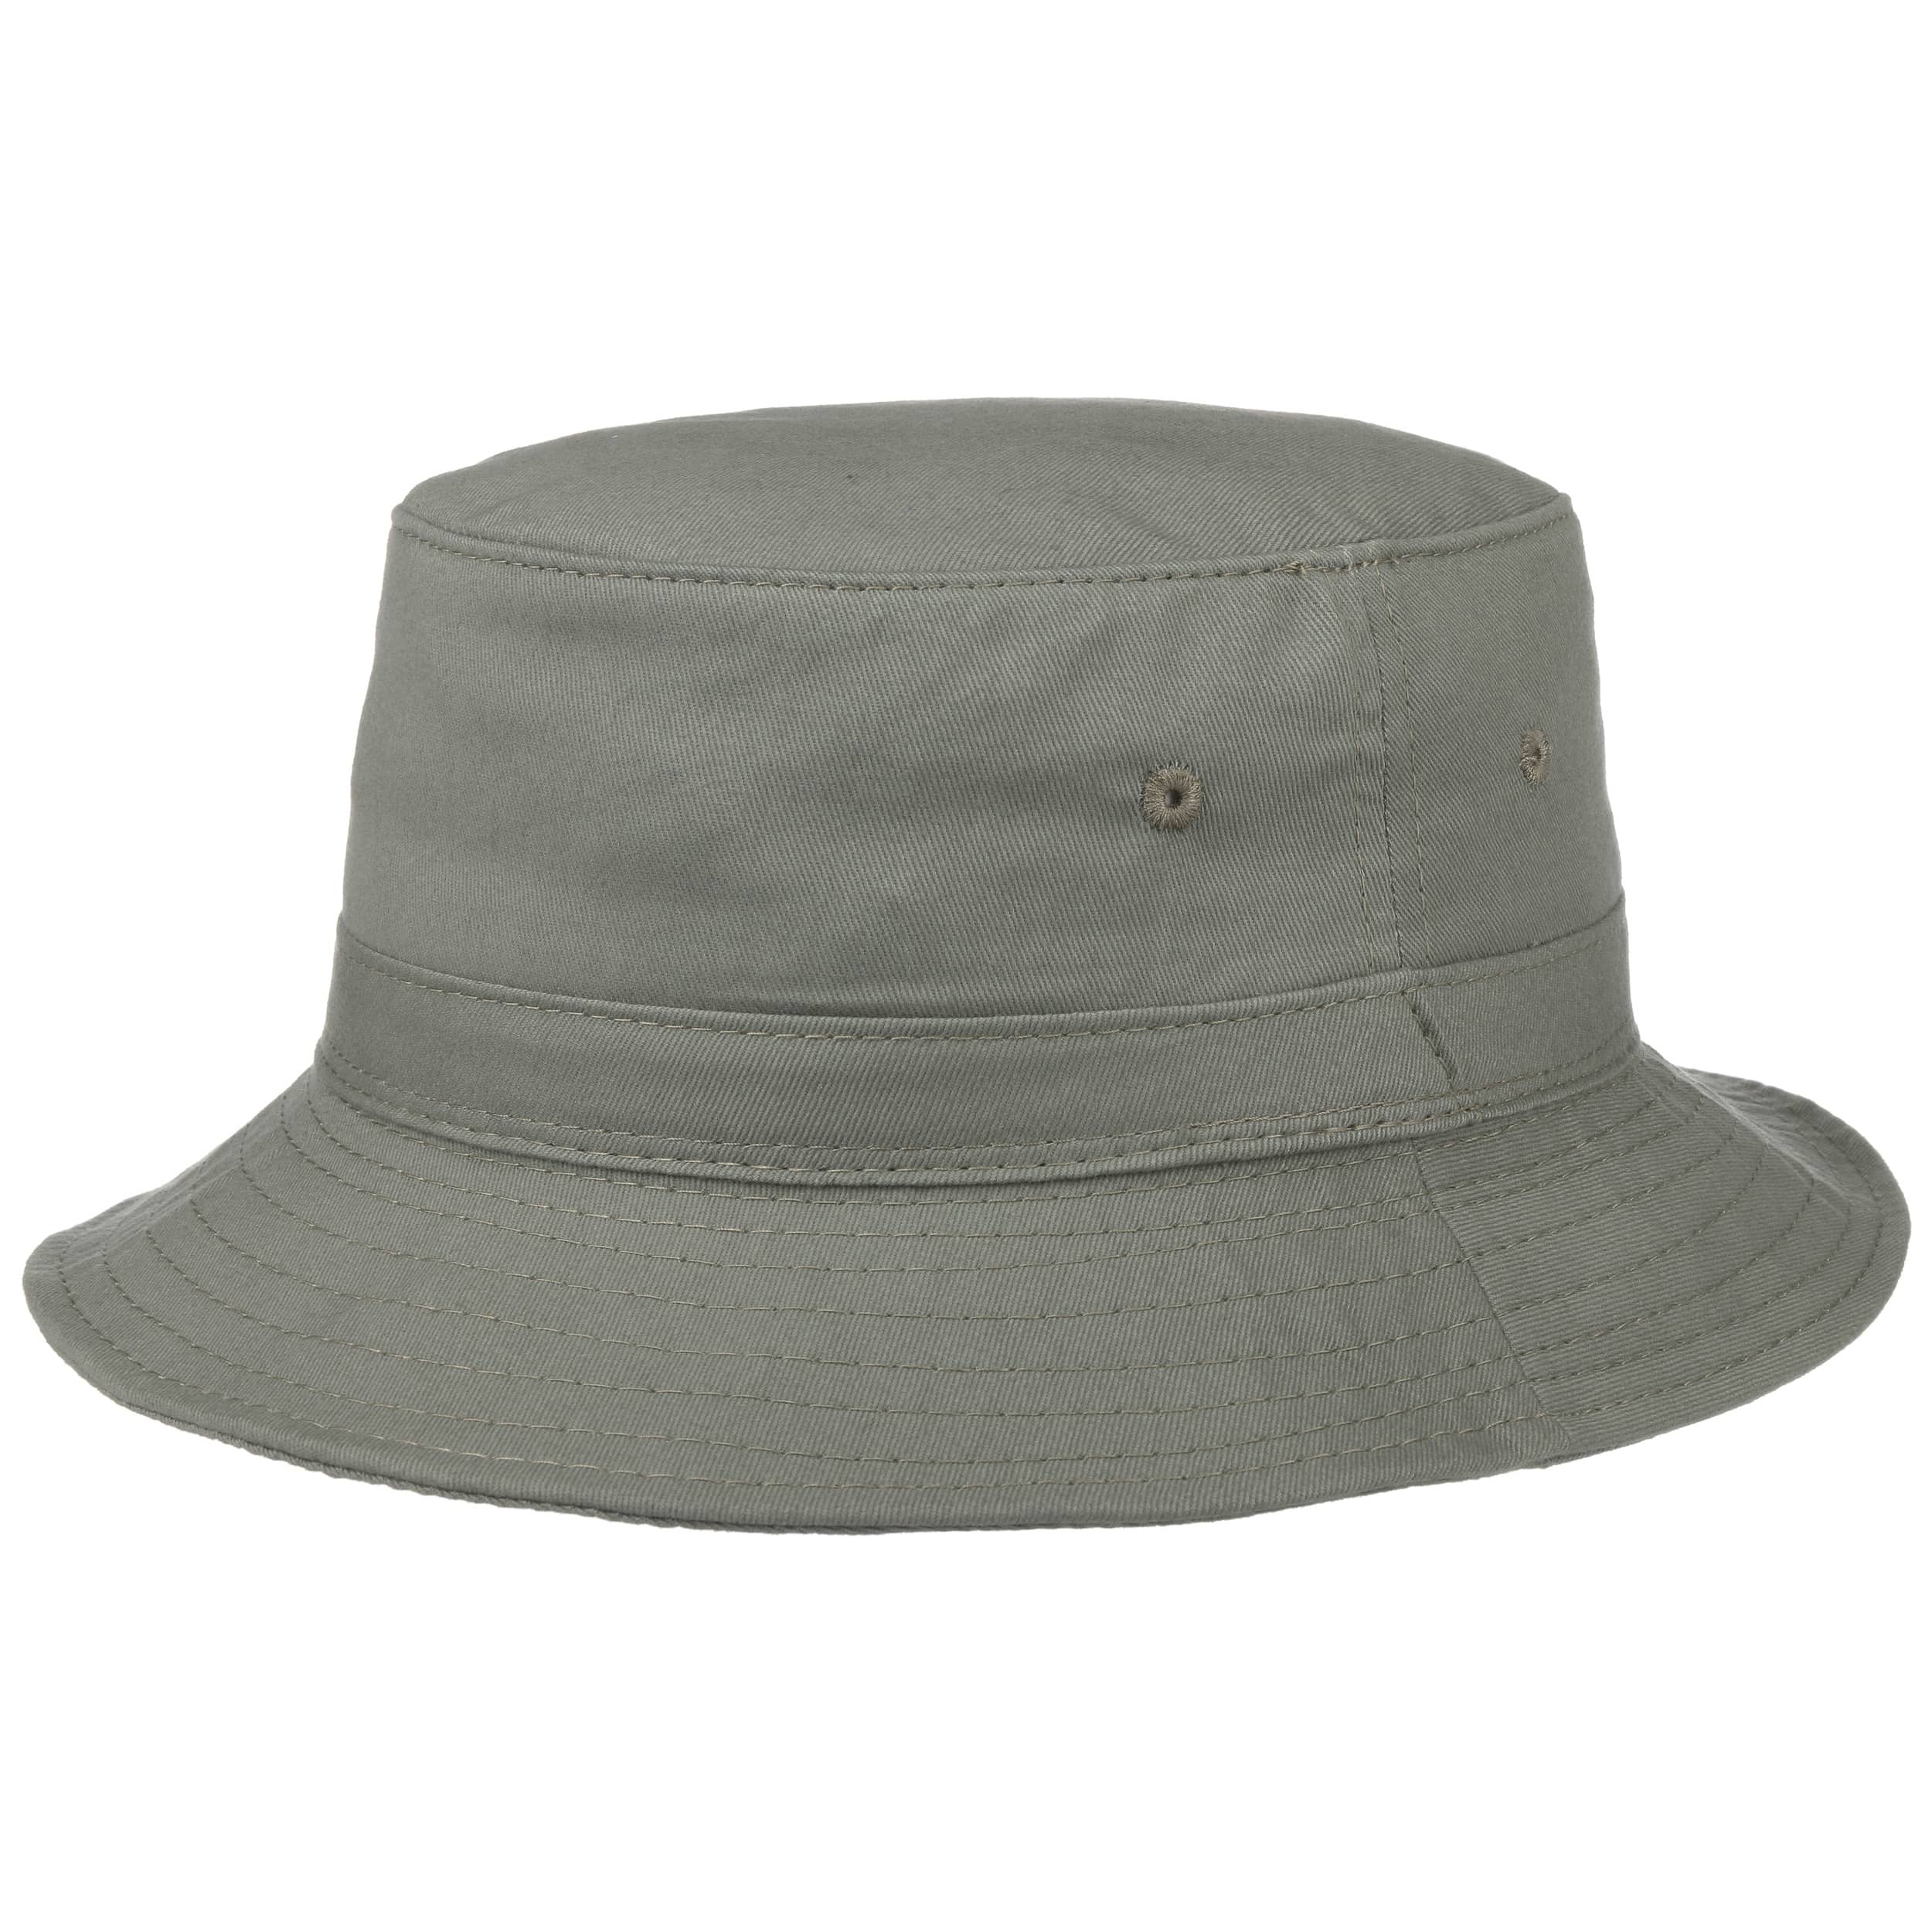 Cappello da pescatore protettivo per bambini cappello da esterno antispruzzo cappello da sole anti UV per bambini 2-6 anni,Nero cappello da pescatore riutilizzabile anti-polvere e anti-inquinamento 